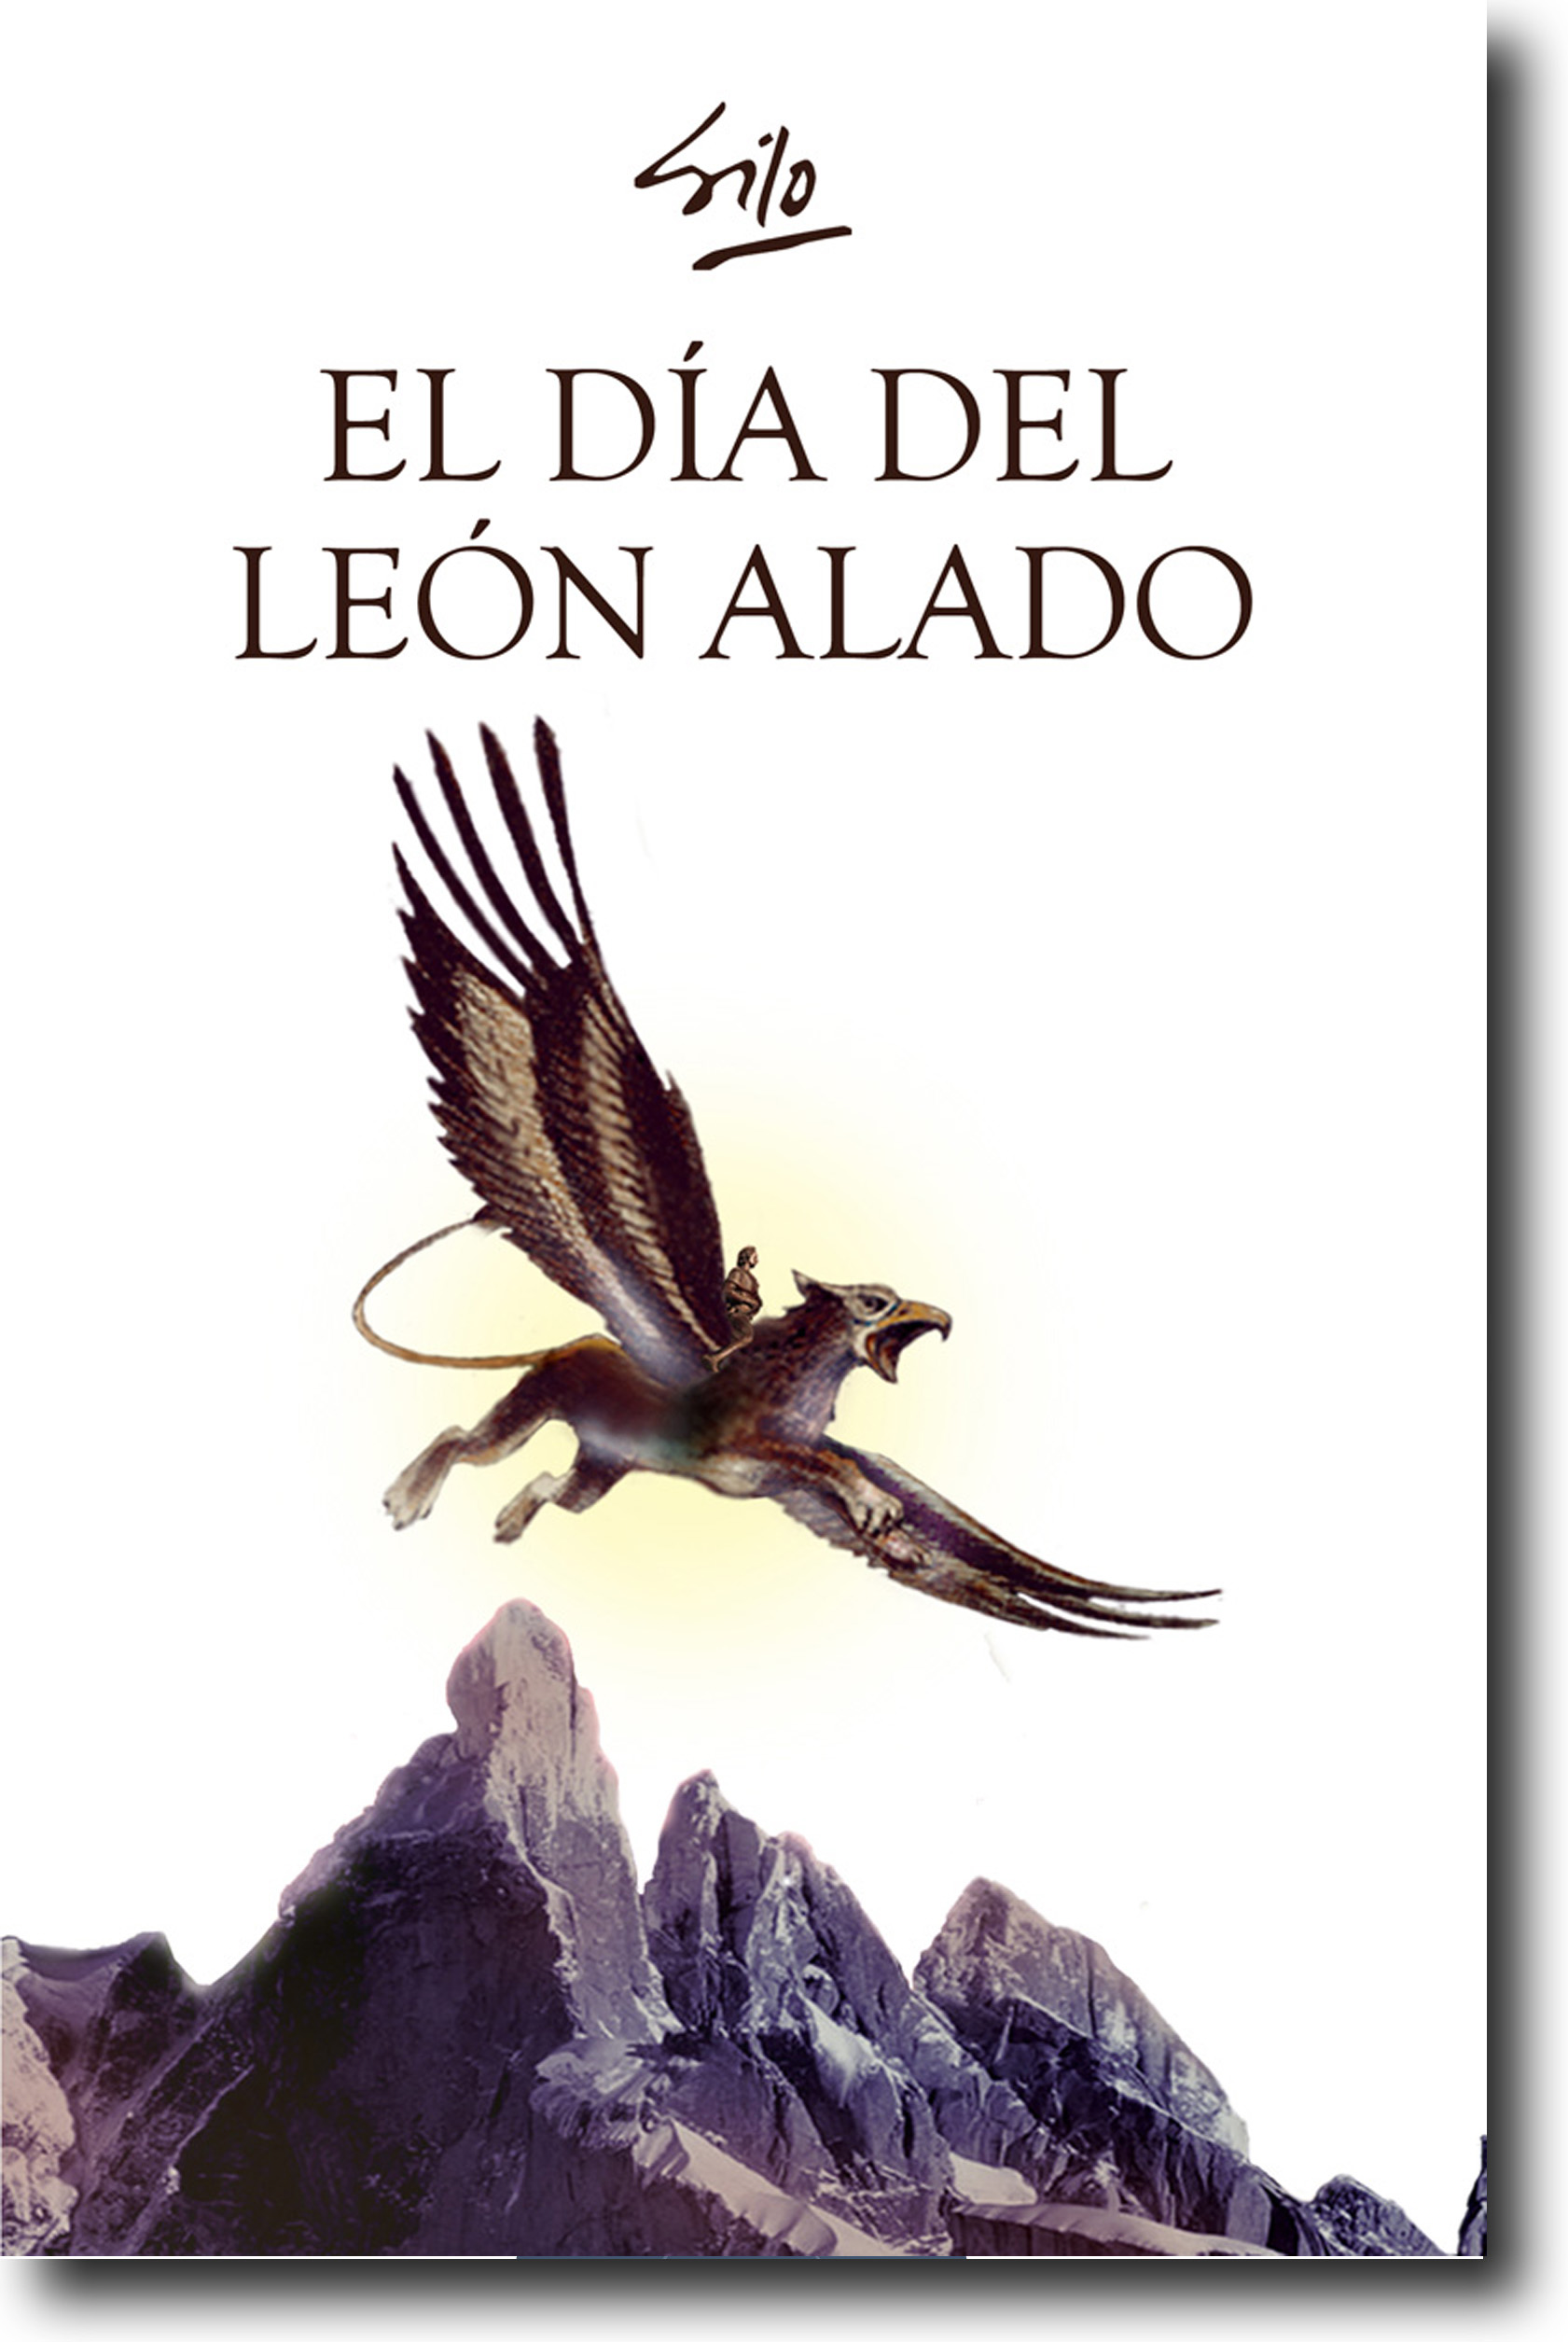 Tapa León Alado - España (España) - Octubre 2013